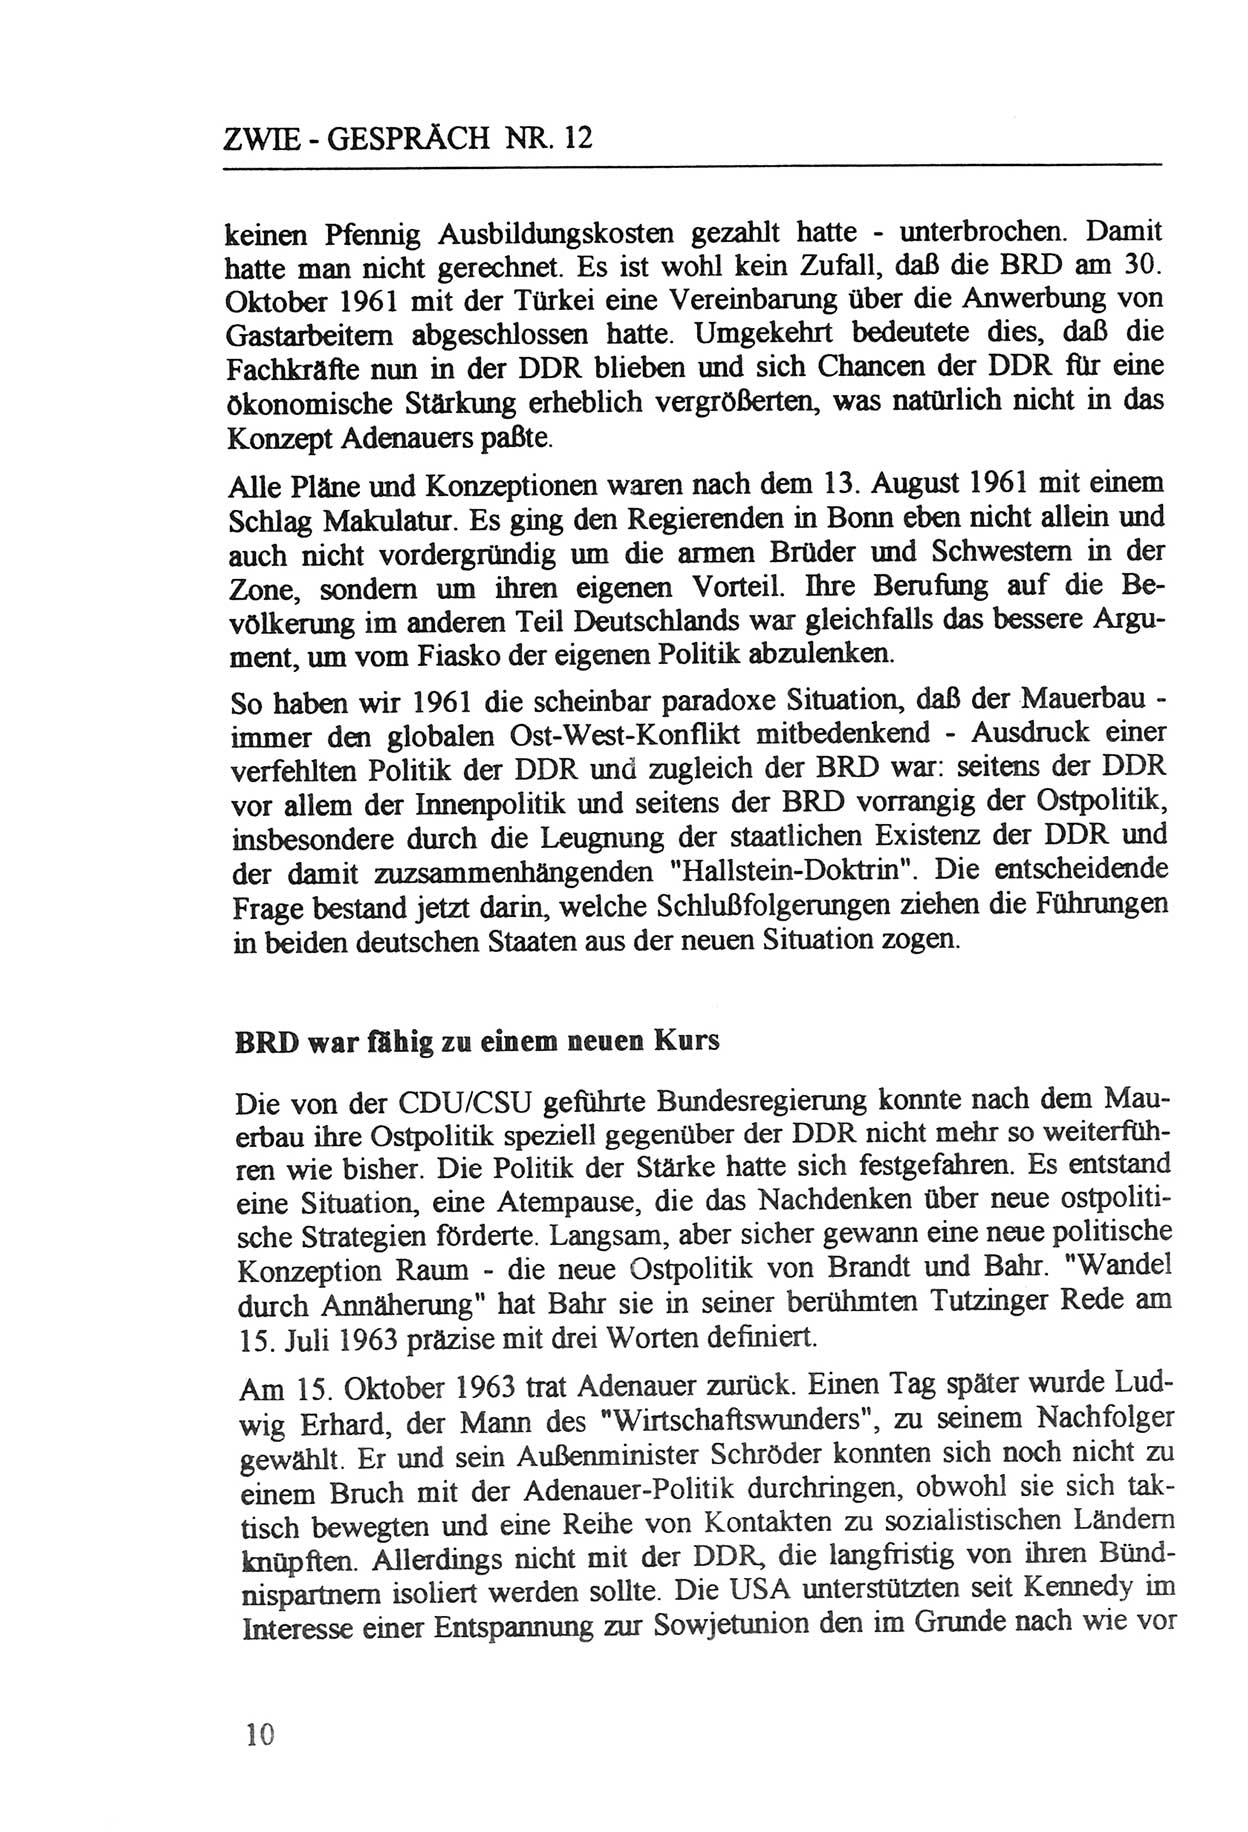 Zwie-Gespräch, Beiträge zur Aufarbeitung der Staatssicherheits-Vergangenheit [Deutsche Demokratische Republik (DDR)], Ausgabe Nr. 12, Berlin 1993, Seite 10 (Zwie-Gespr. Ausg. 12 1993, S. 10)